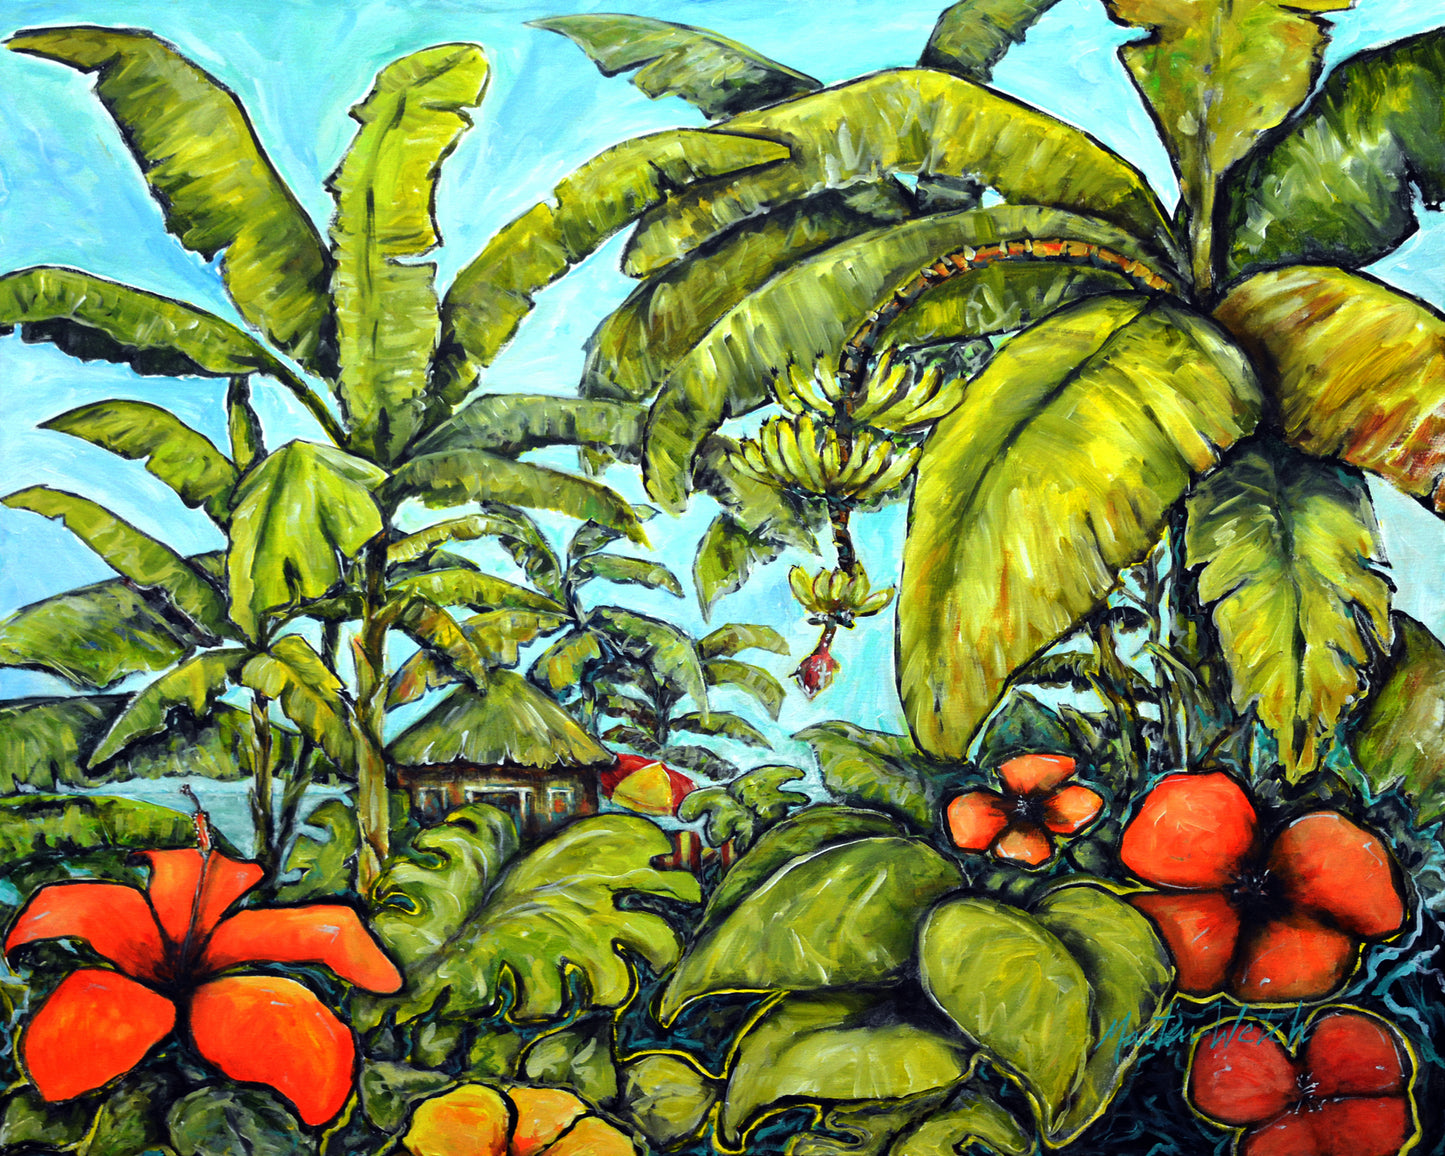 Banana Cabana - Tropical Hut - 11"x14" Print